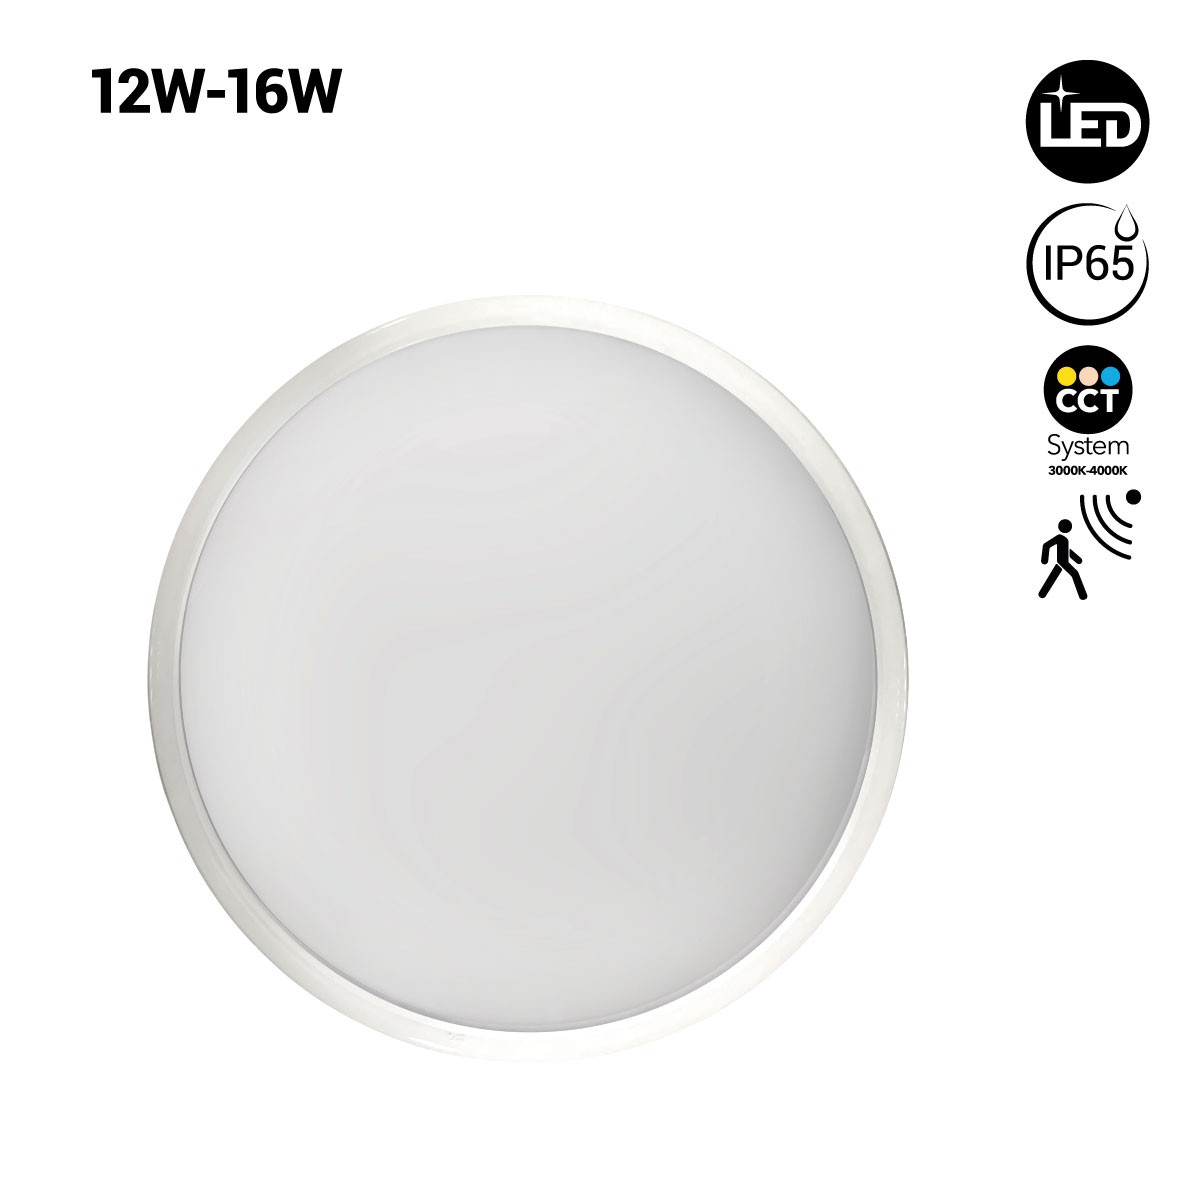 Candeeiro de tecto circular LED com sensor - Potência regulável 12W-16W - IP65 - CCT - Ø30cm